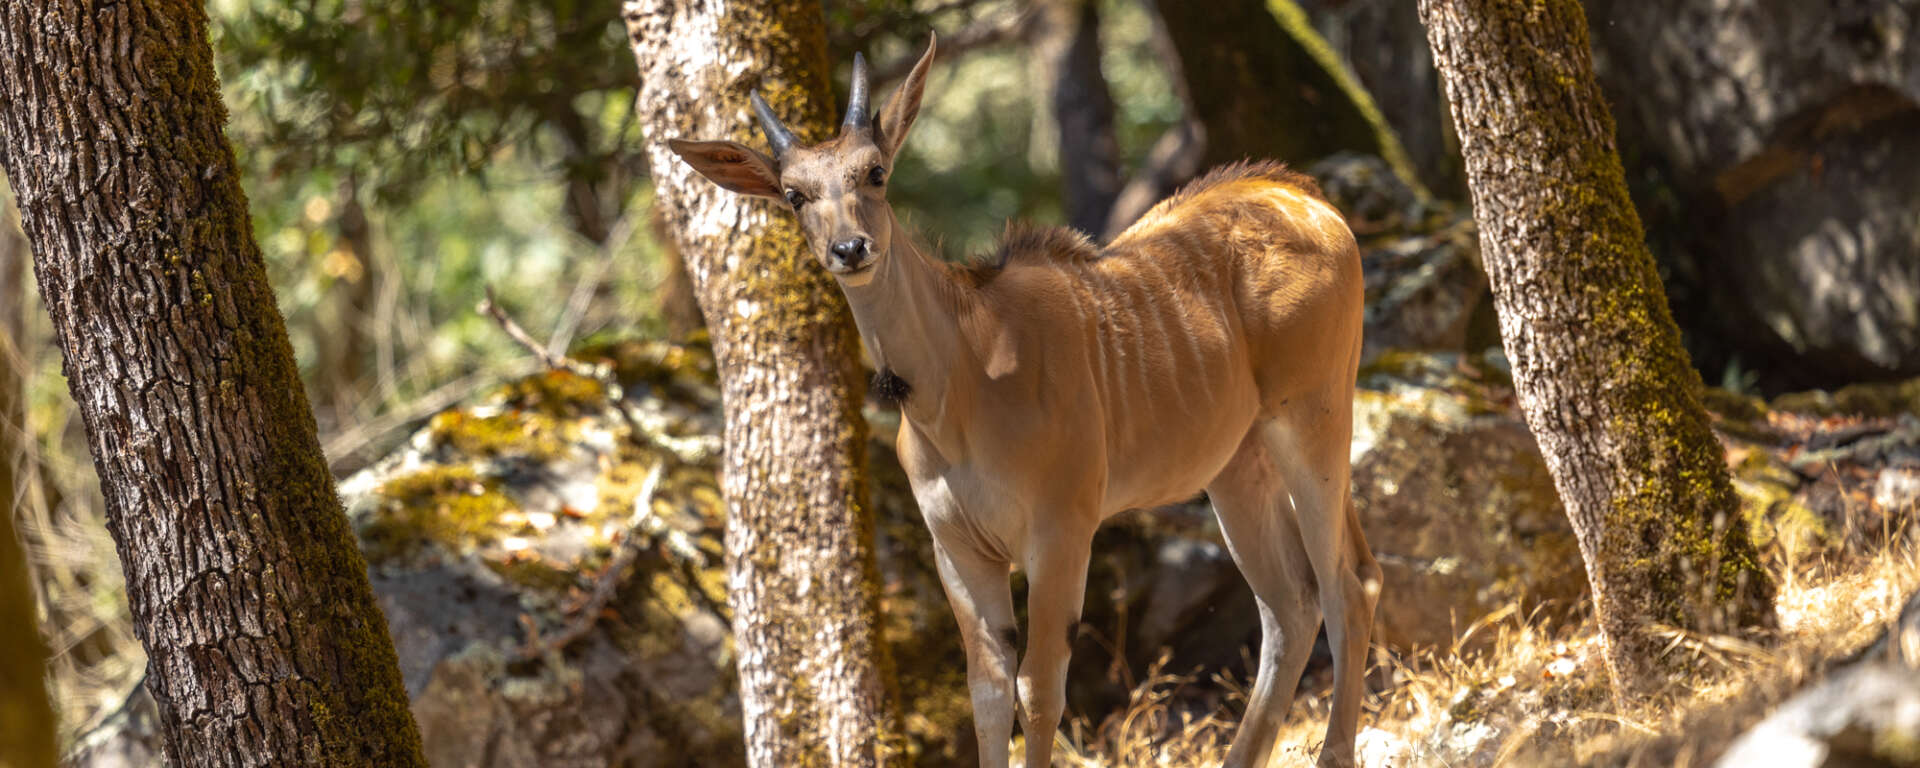 common eland among trees